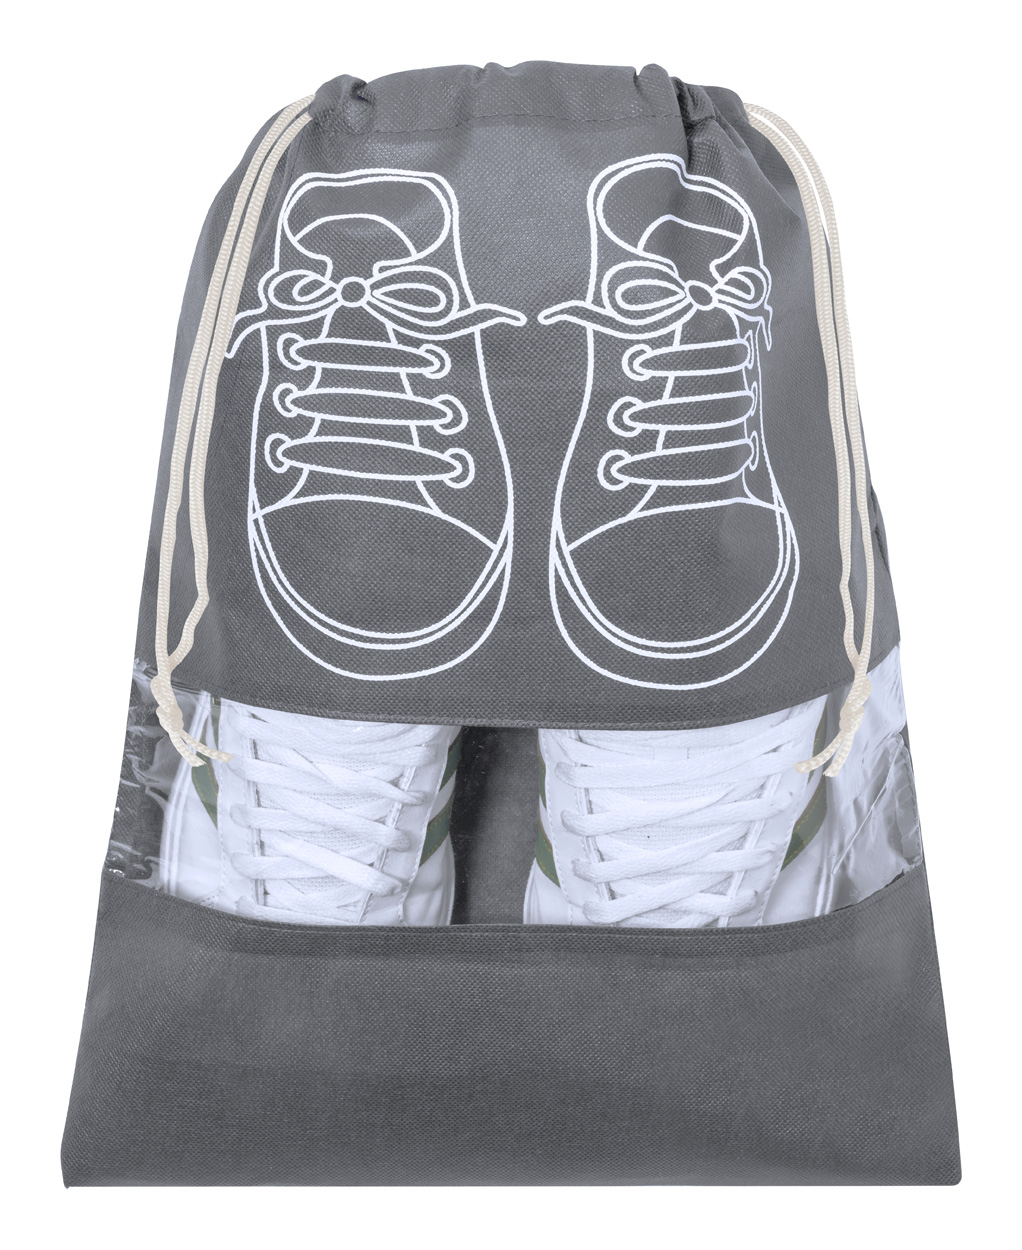 Cyde shoe bag - grey